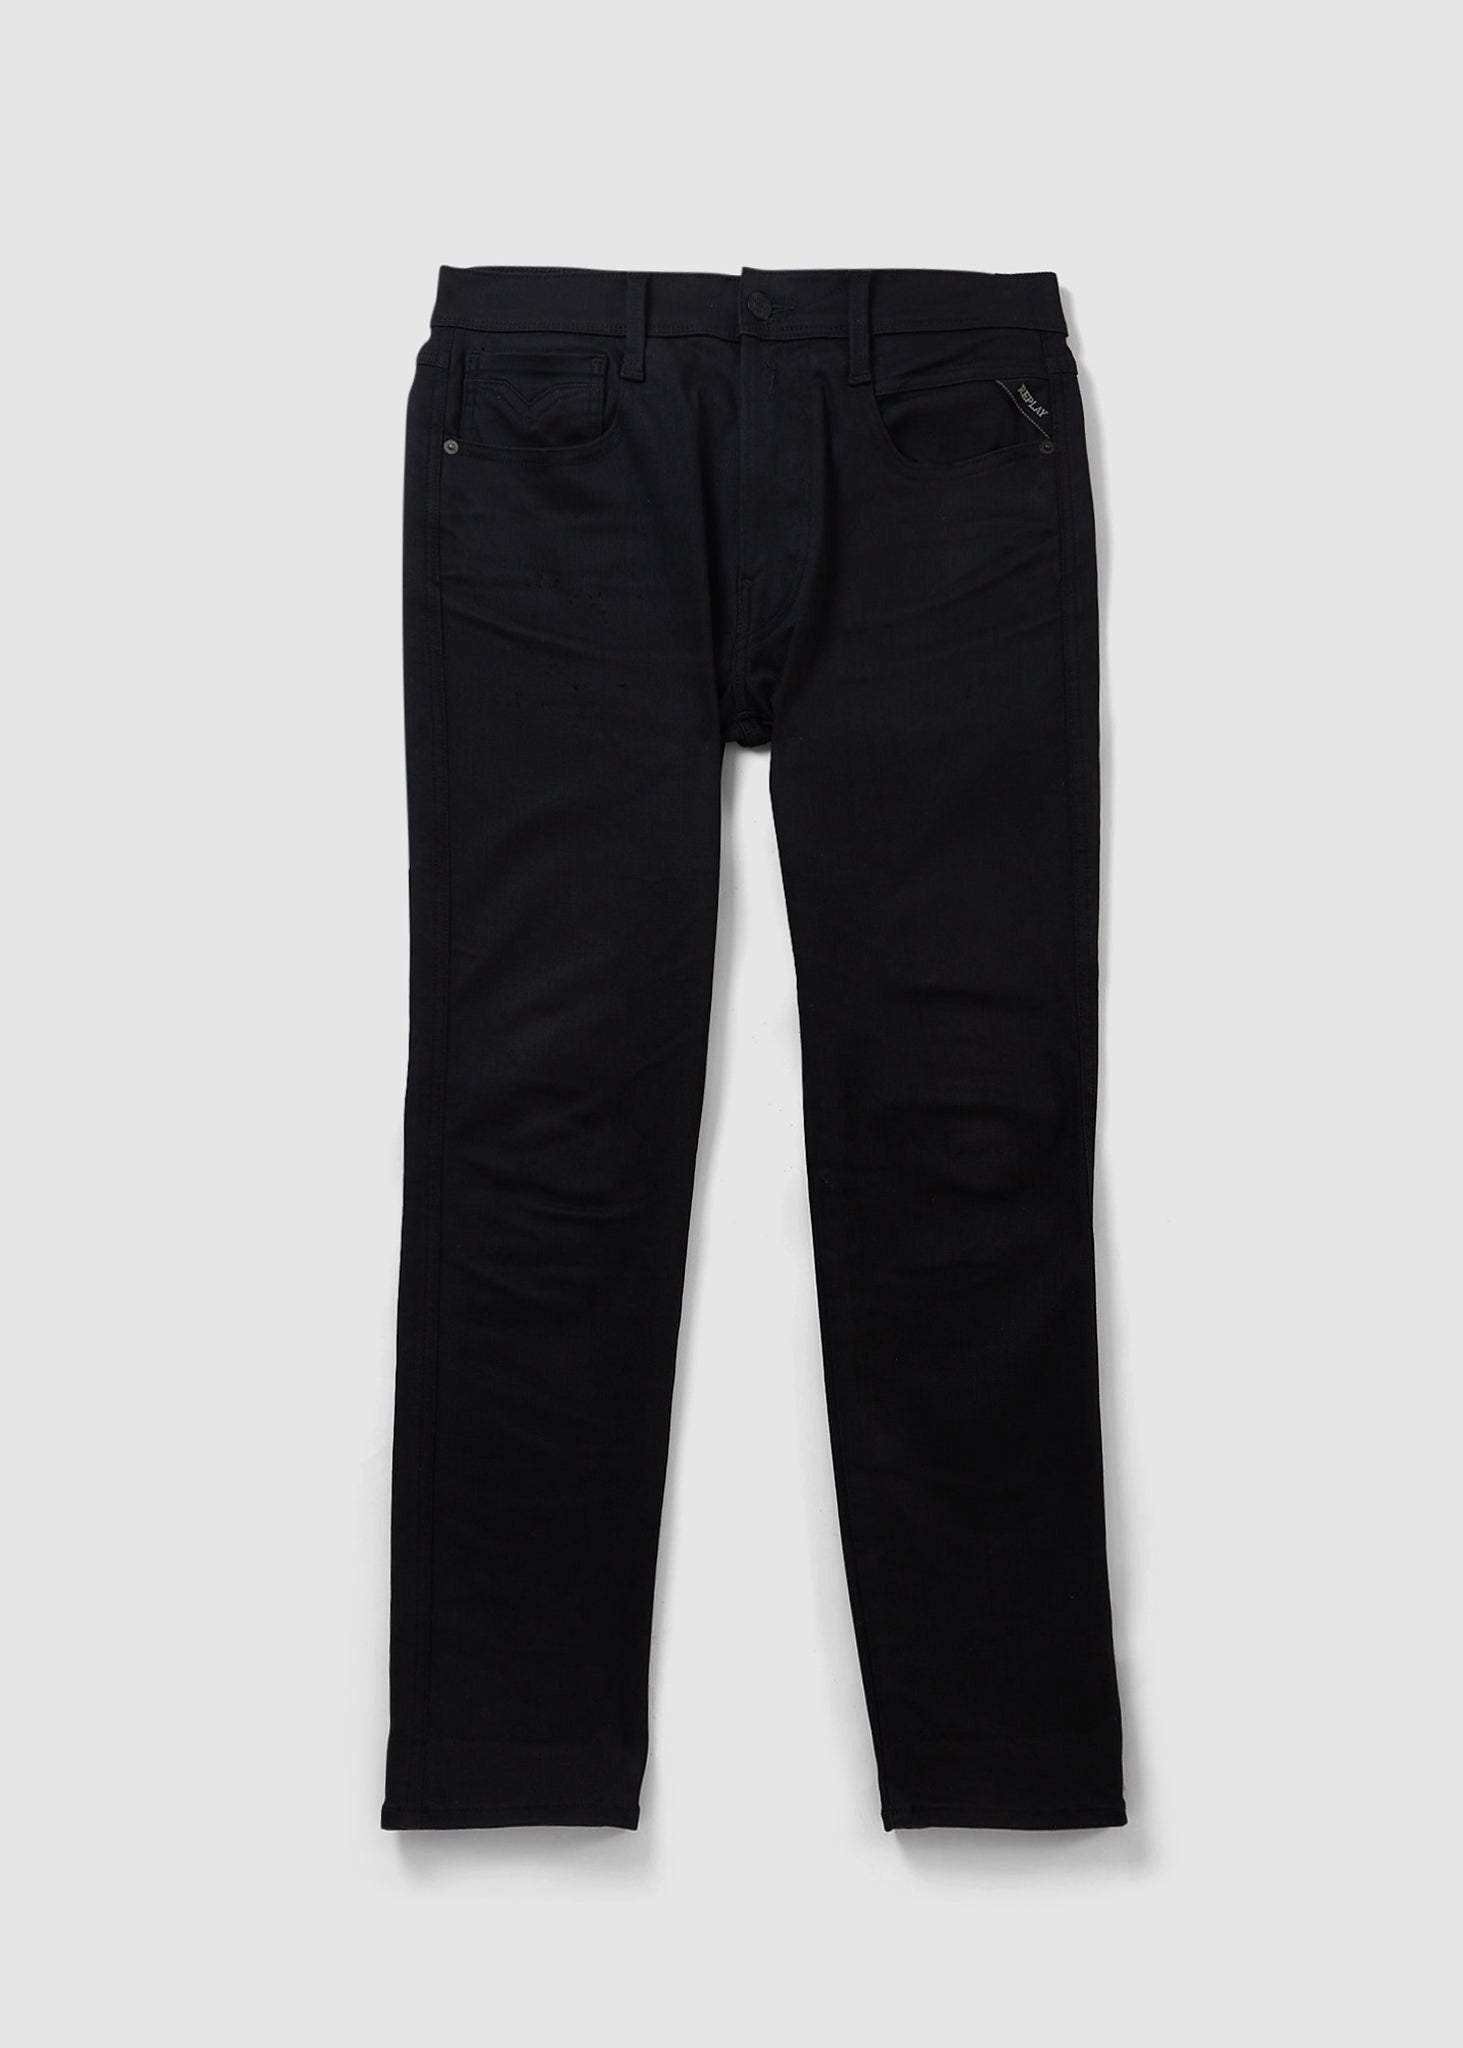 Image of Replay Mens Black Resin Hyperflex Reused Jeans